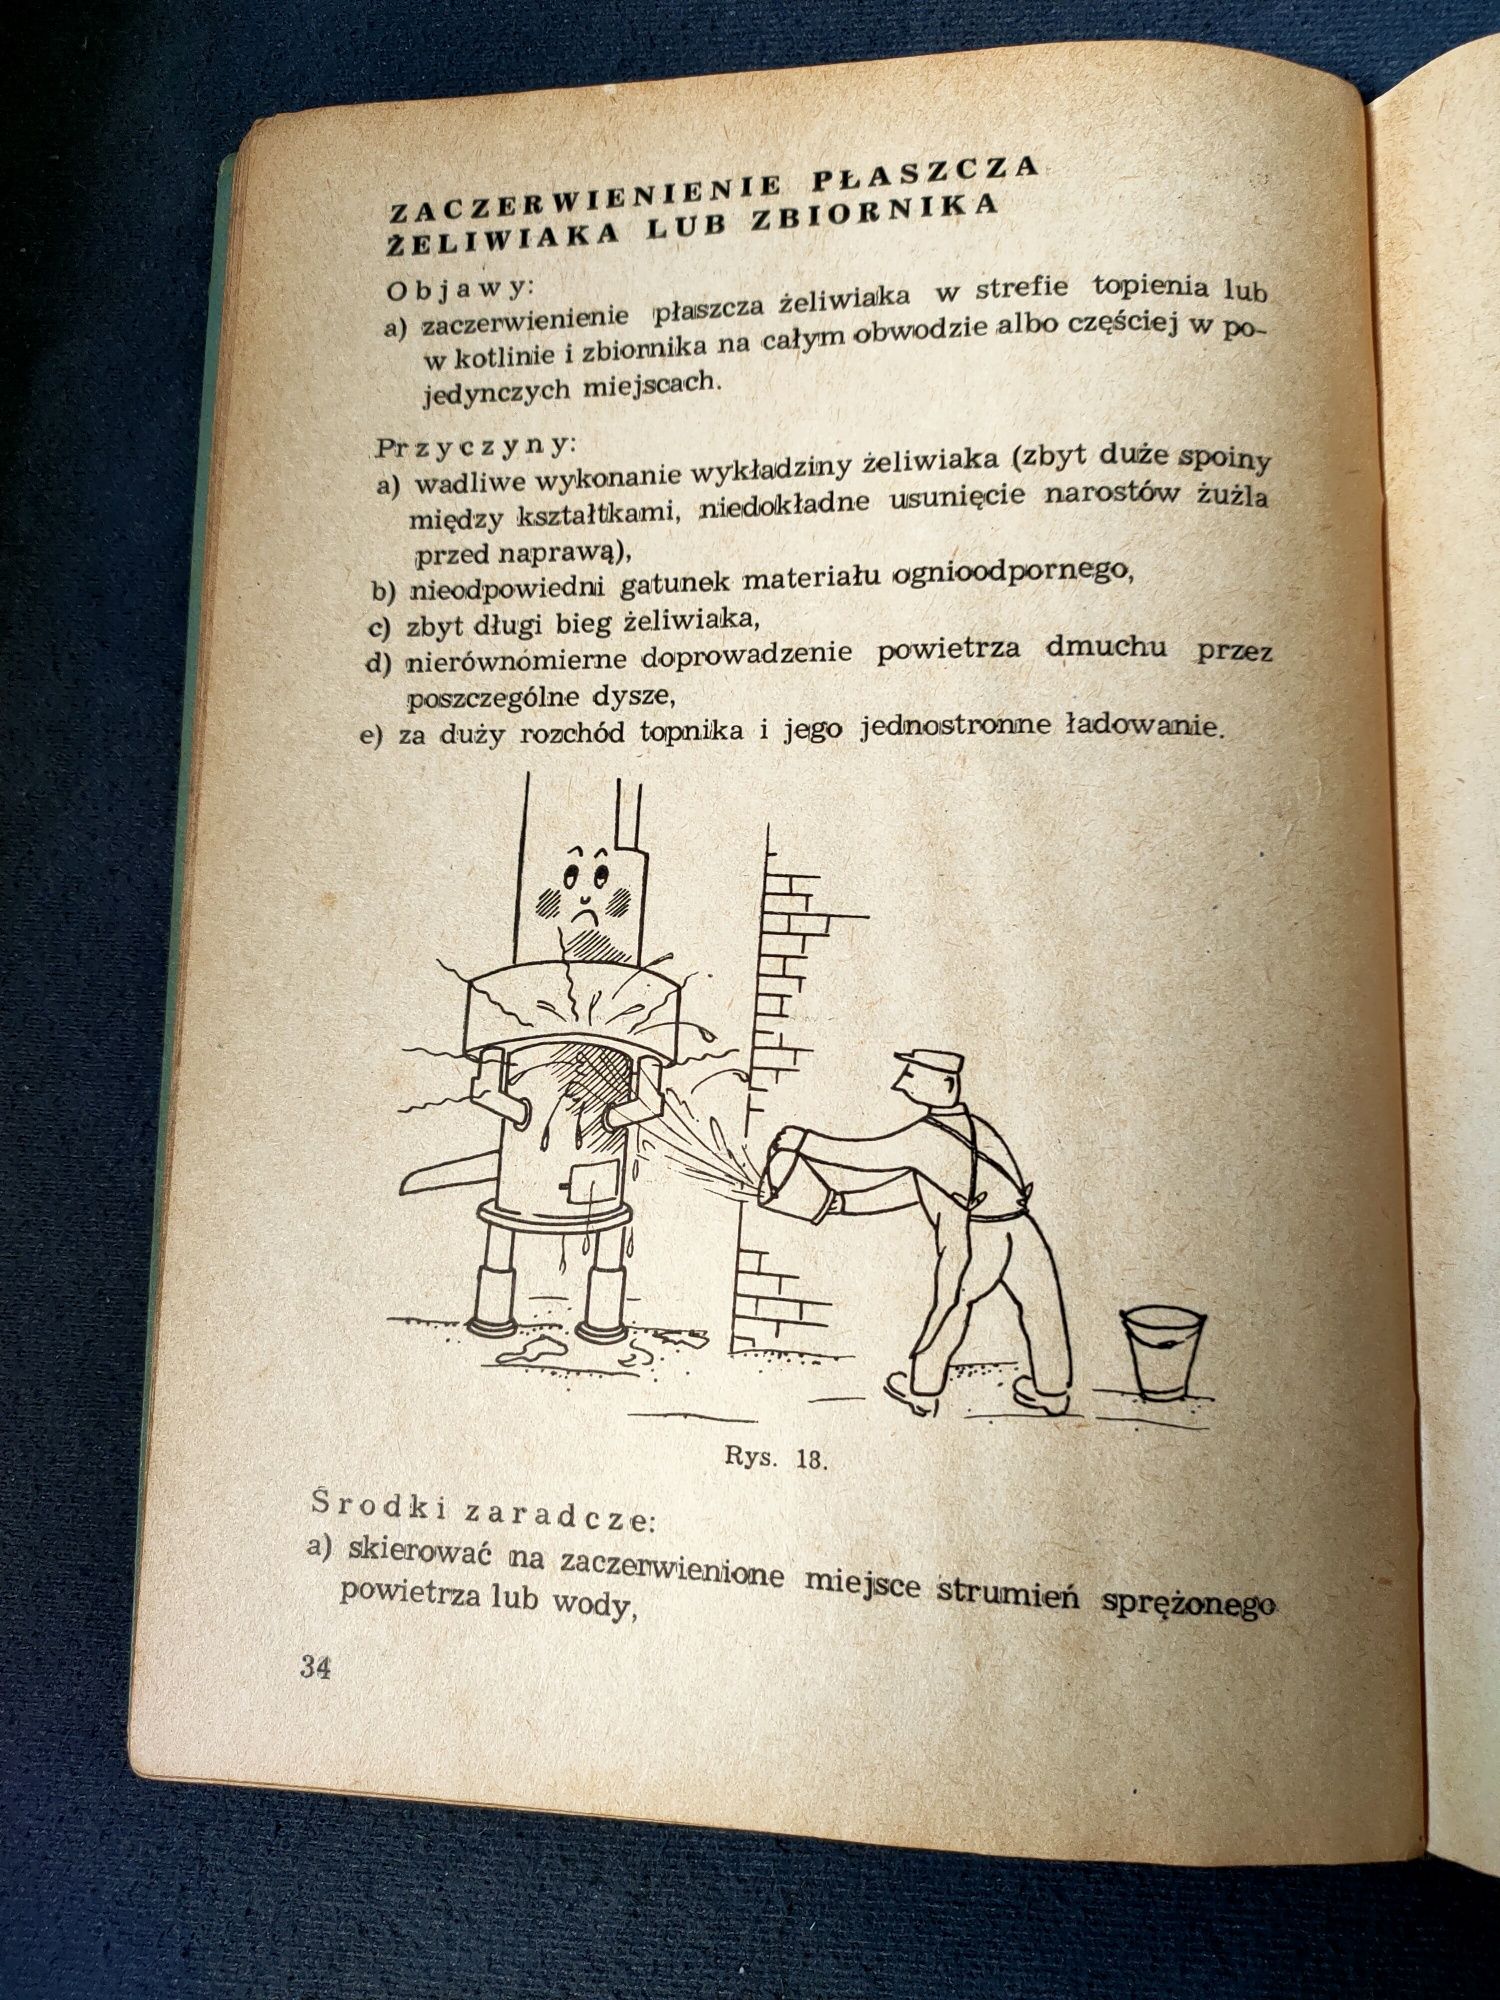 PRL instrukcja obsługi pieca żeliwiaka